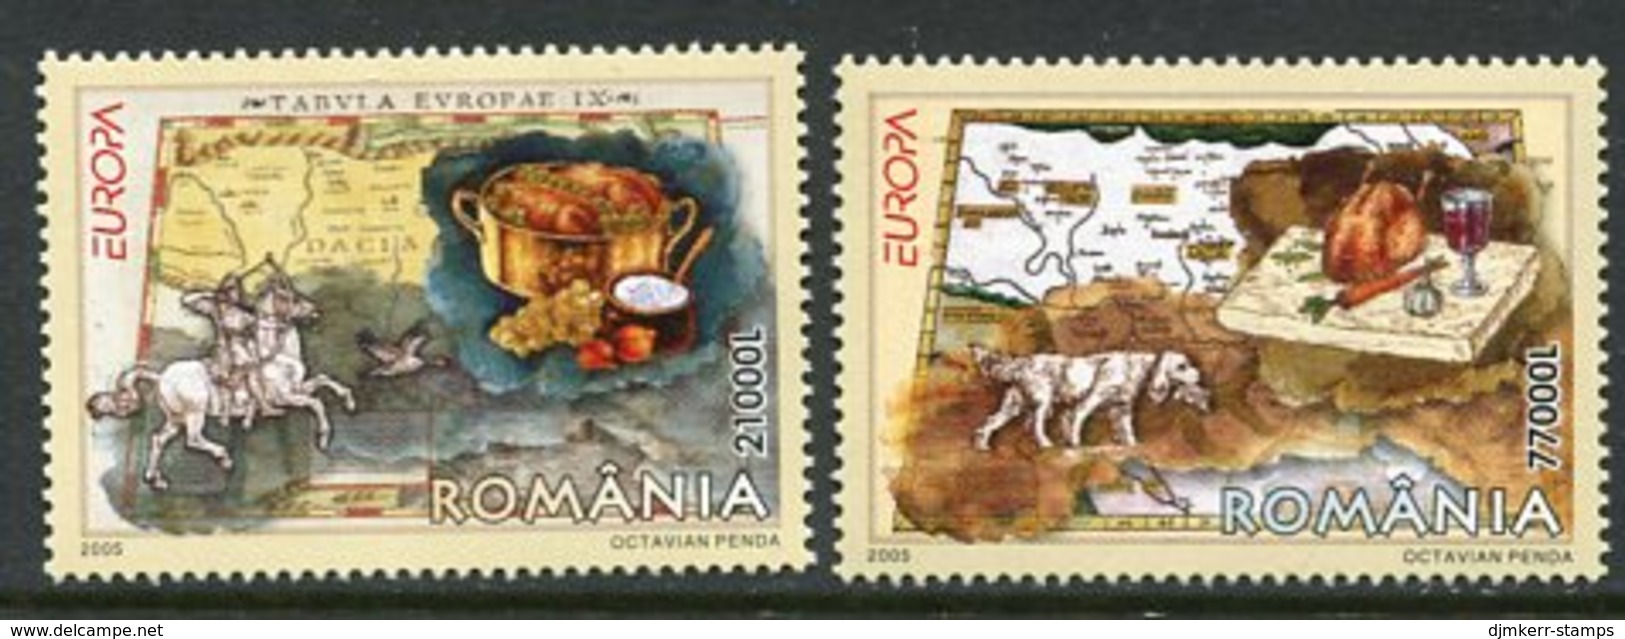 ROMANIA 2005 Europe: Gastronomy  MNH / **.  Michel 5935-36 - Ongebruikt